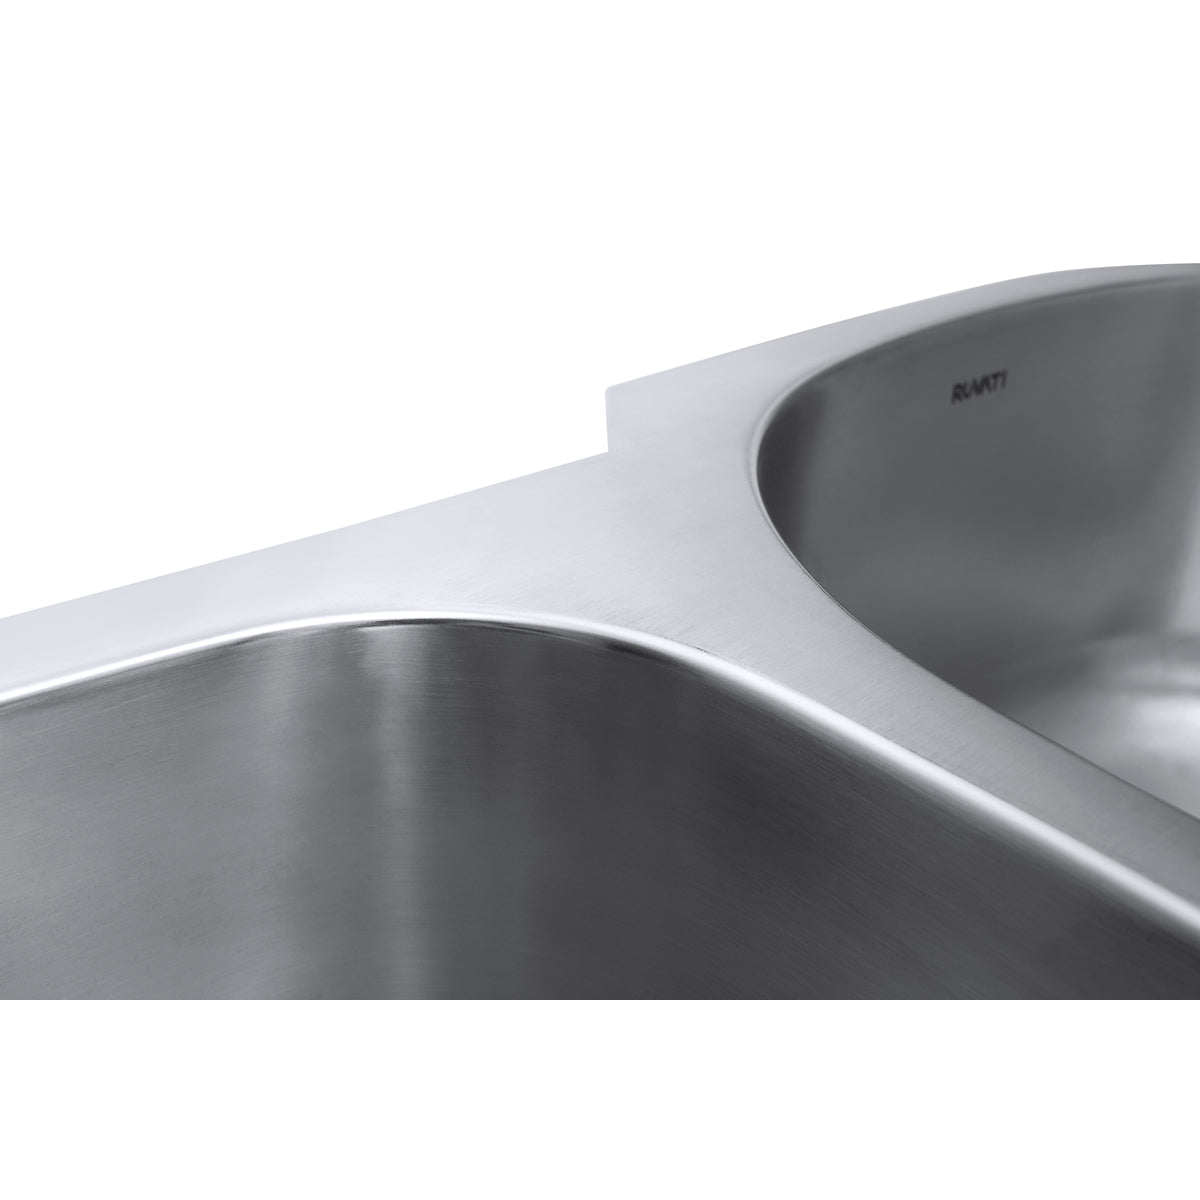 Ruvati 32" Undermount Double Bowl 16 Gauge Stainless Steel Kitchen Sink